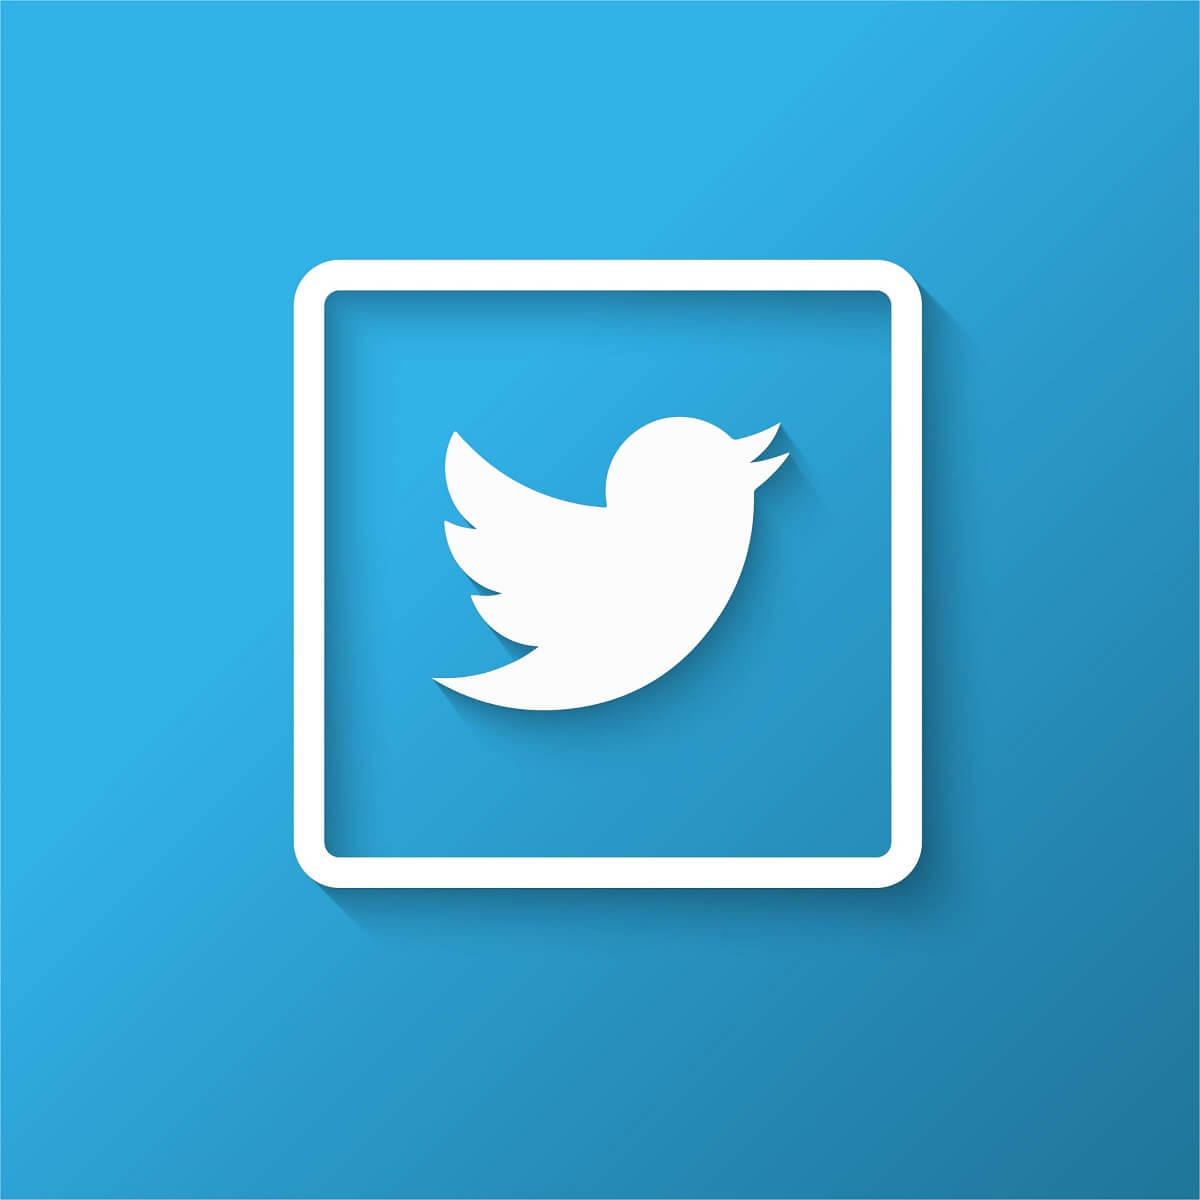 Twitterのロゴの画像。